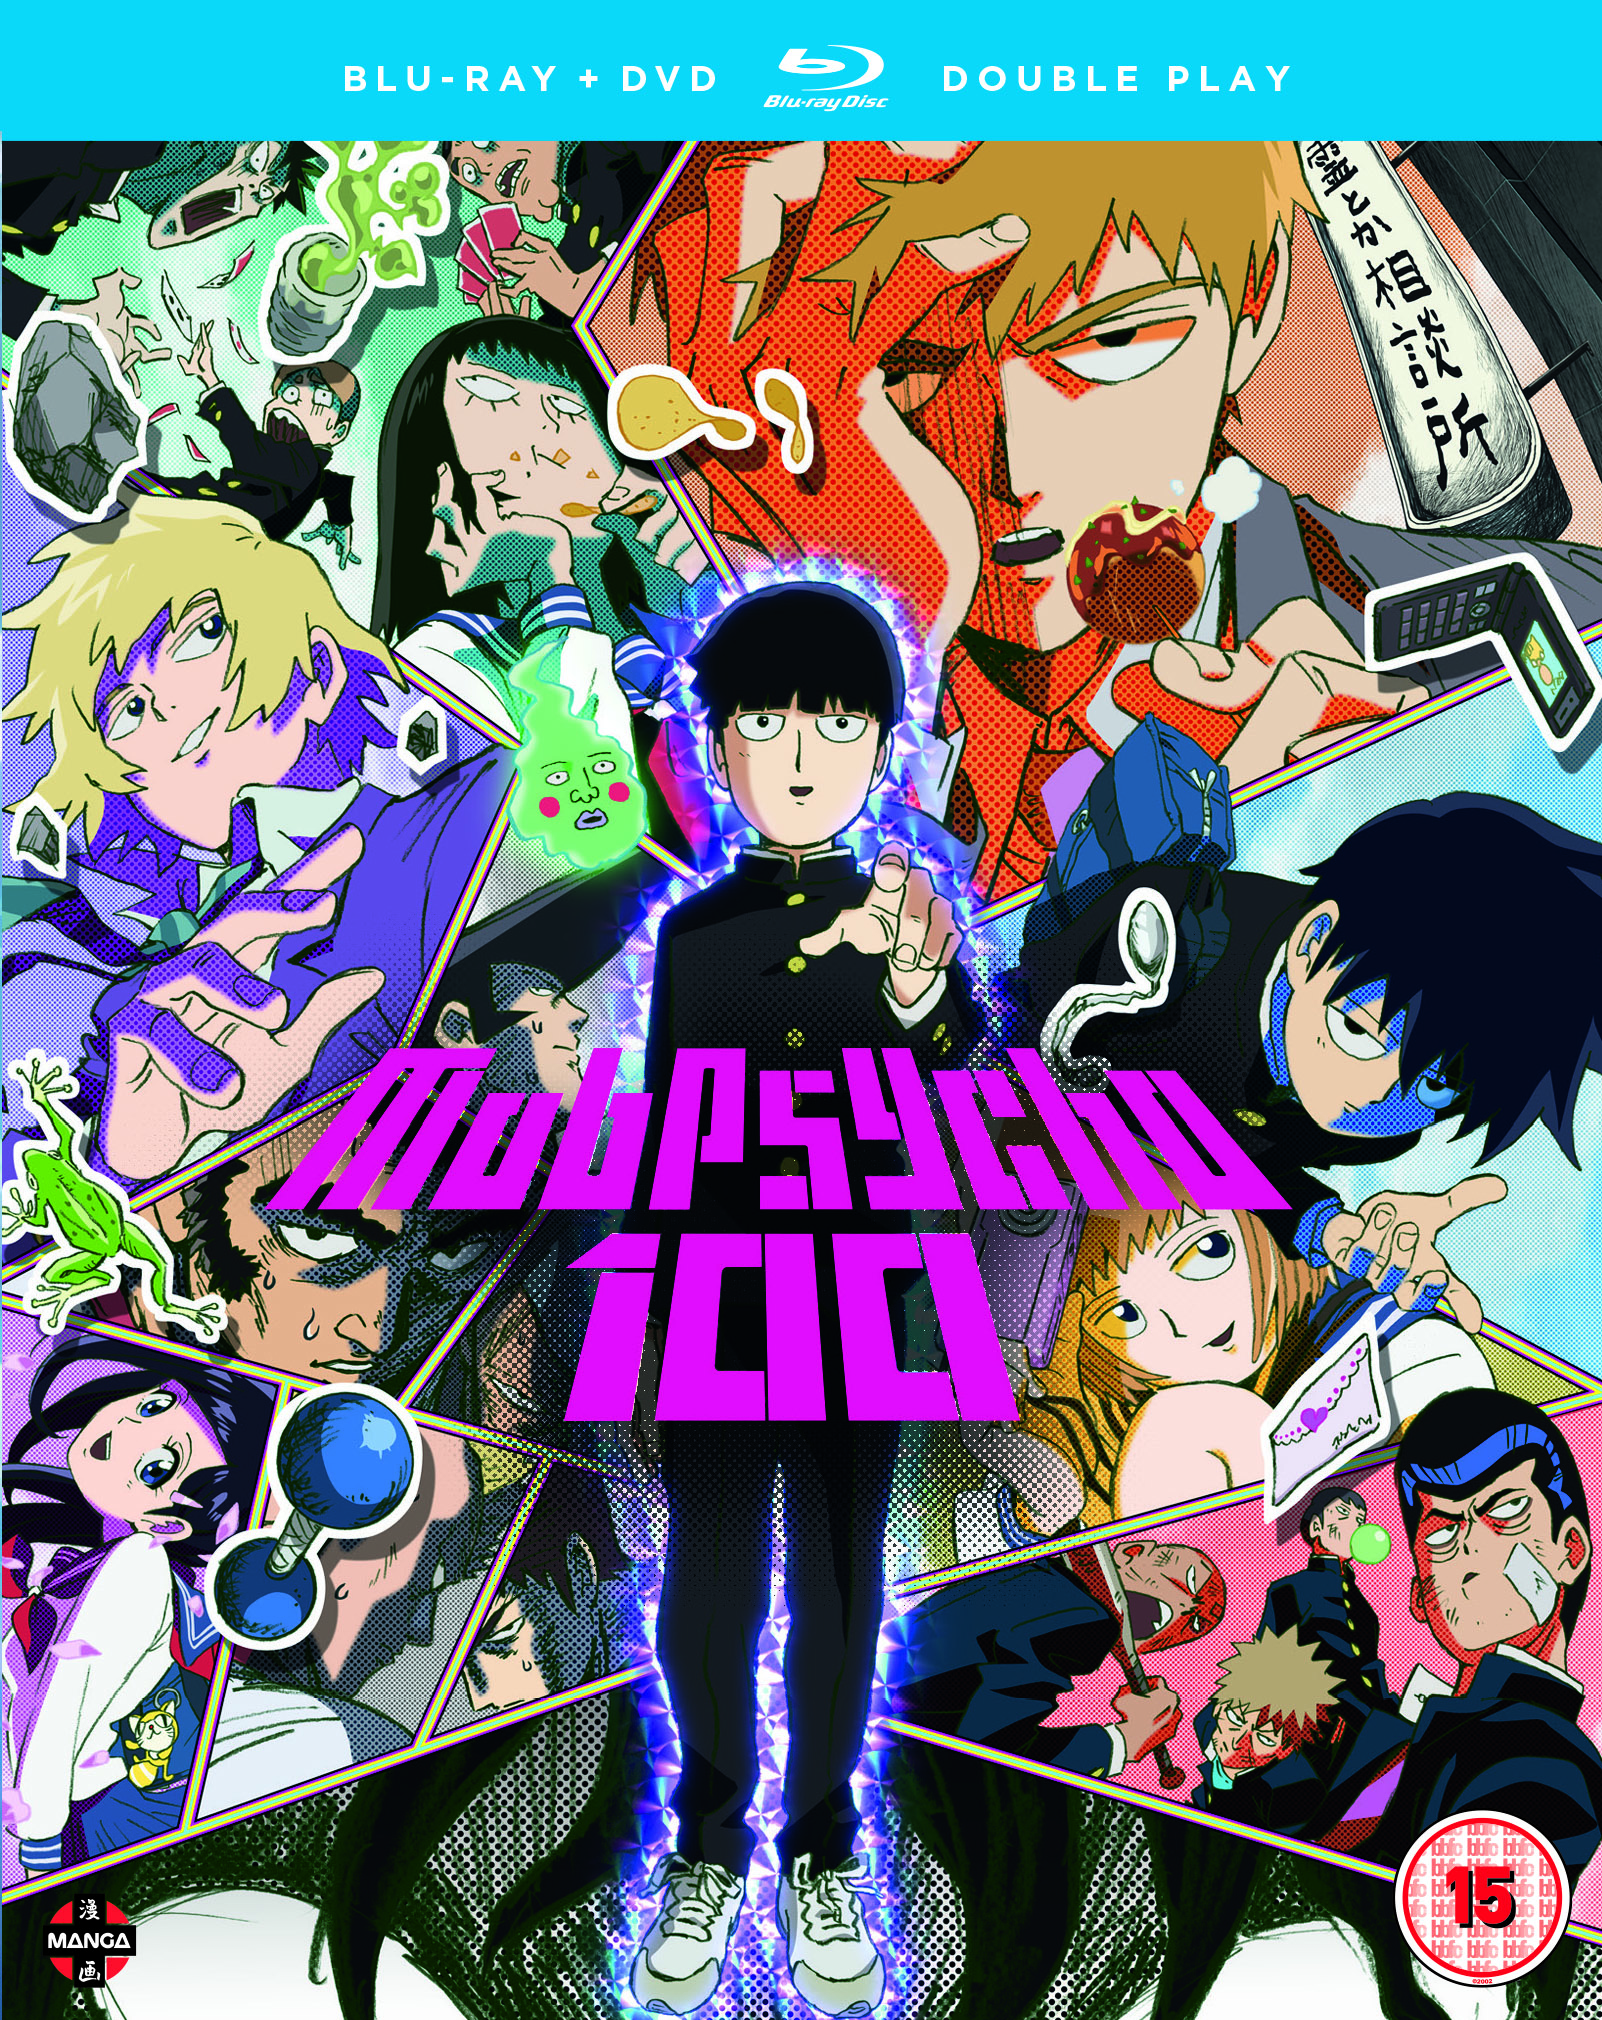 Mob Psycho 100 Anime Season 3's Promo Video Highlights Mob - News - Anime  News Network